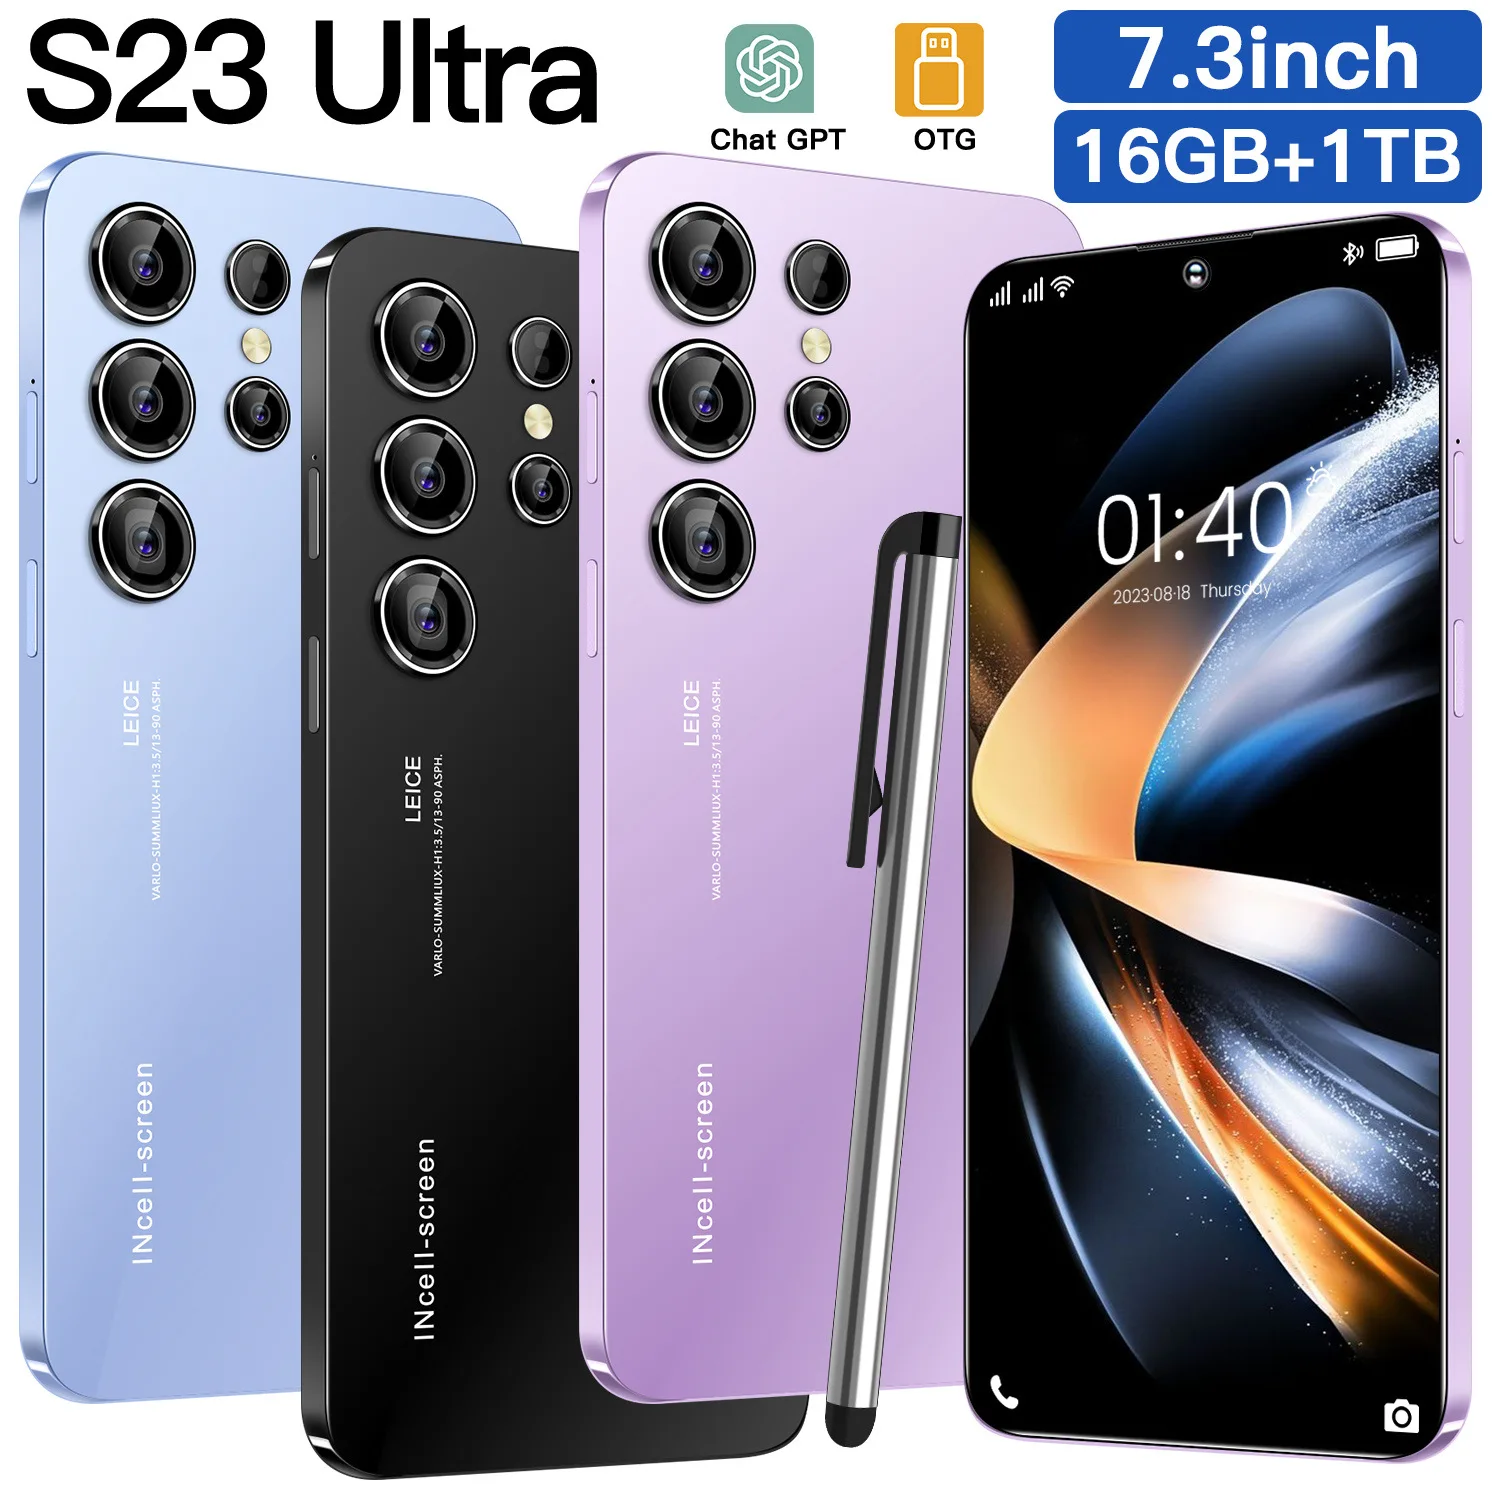 

Смартфон S23 Ultra, оригинальный смартфон, экран 6,7 дюйма, 16 ГБ + 1 ТБ, Android, разблокированные смартфоны с двумя Sim-картами, глобальная версия